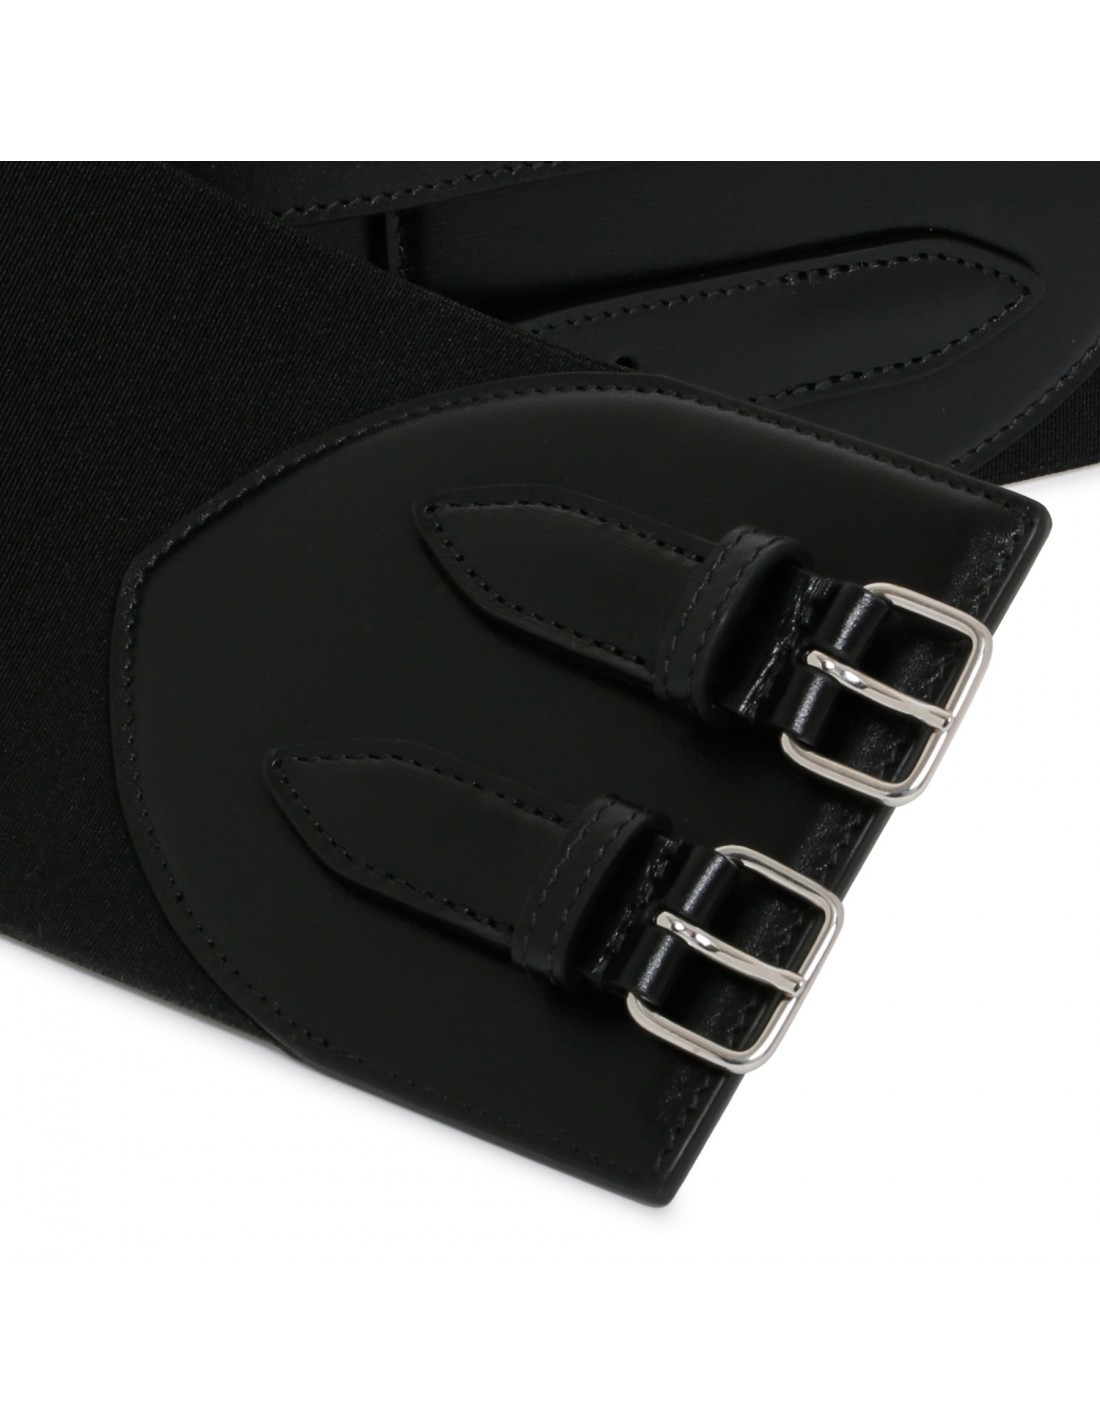 Black elastic corset belt